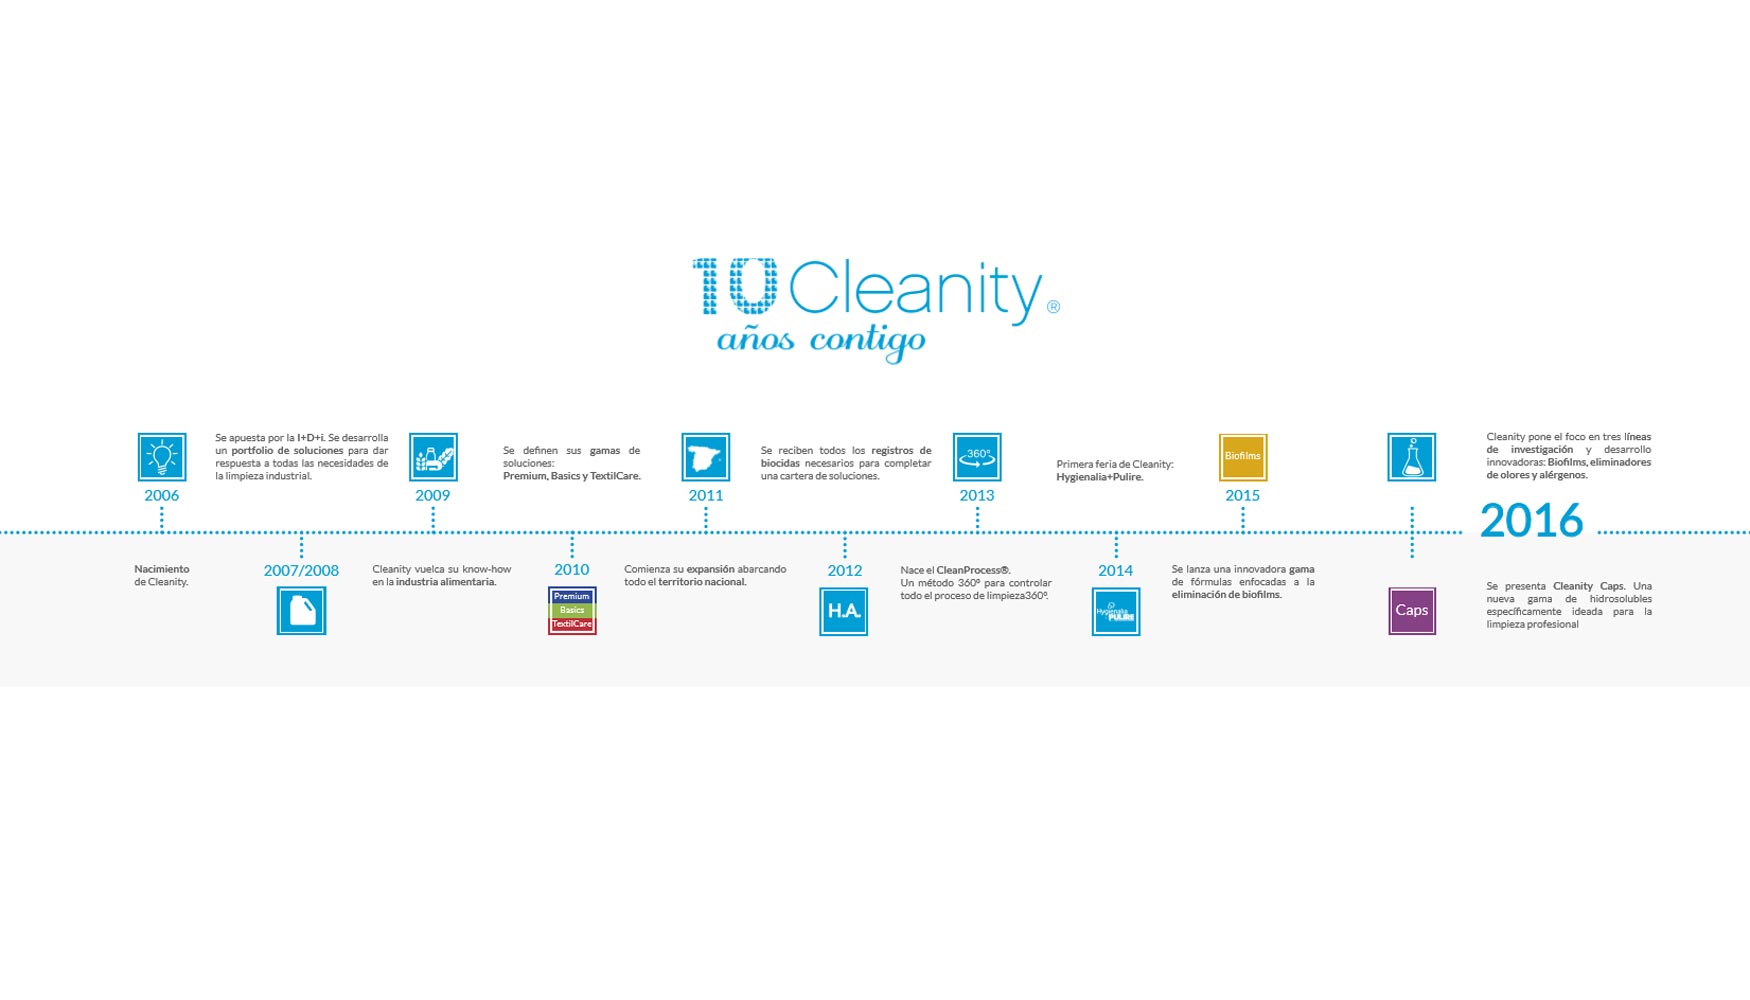 Timeline de los 10 aos de Cleanity